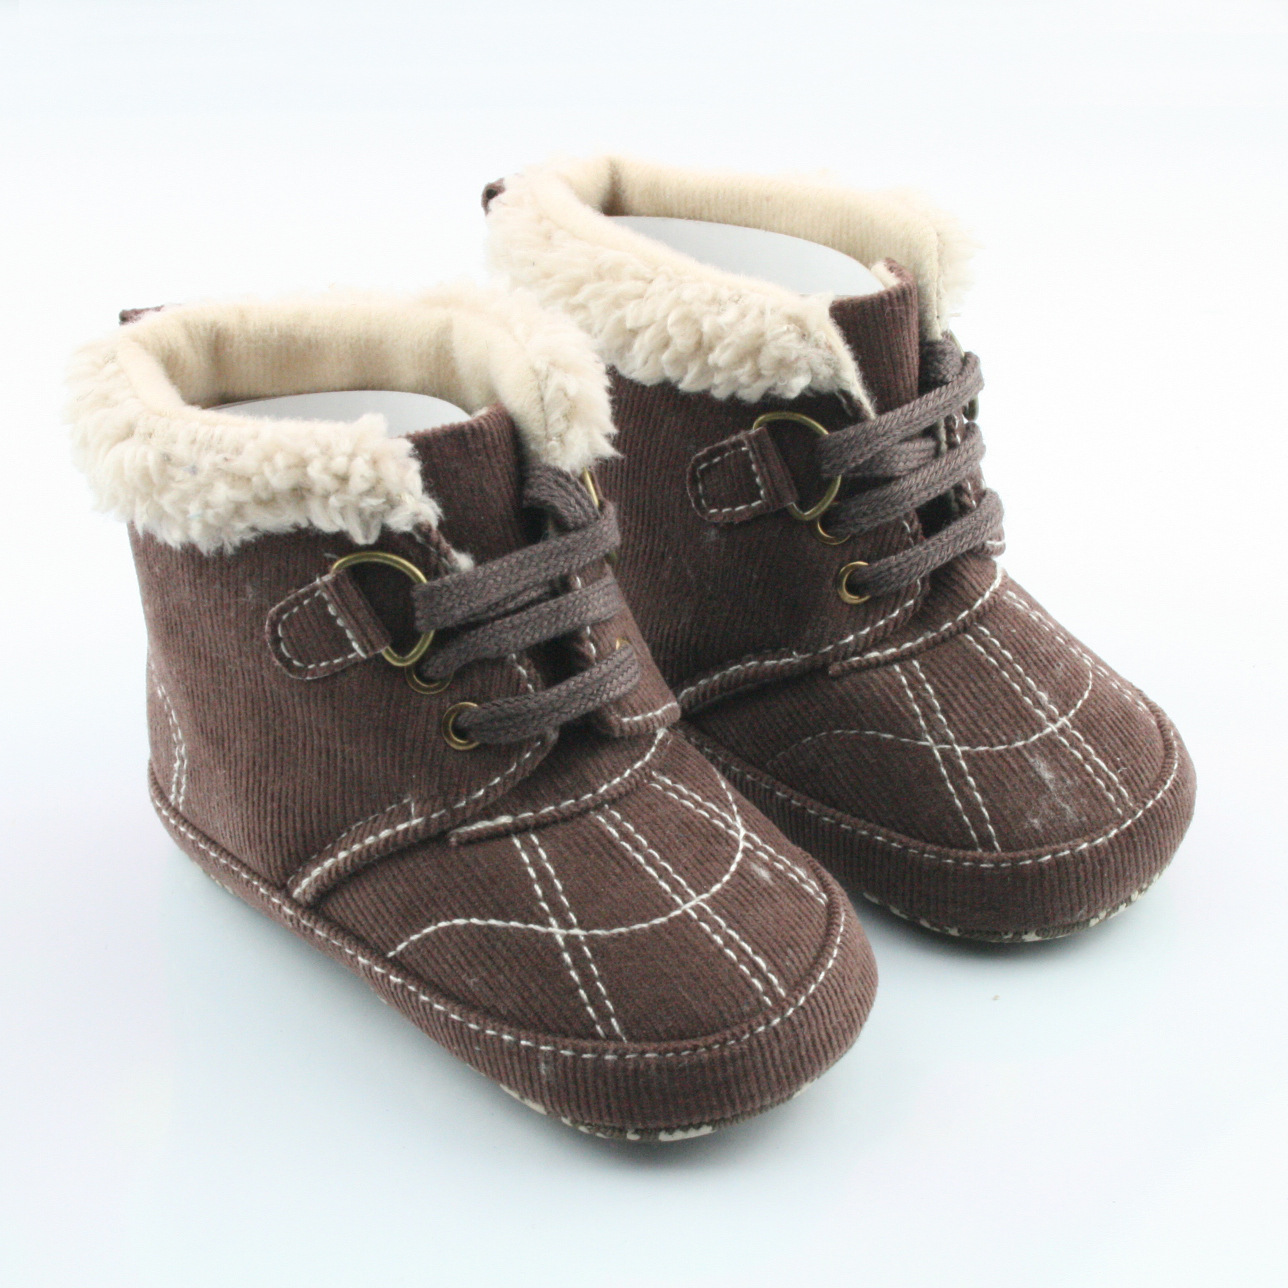 厂家直销婴儿鞋高筒保暖棉鞋 图片